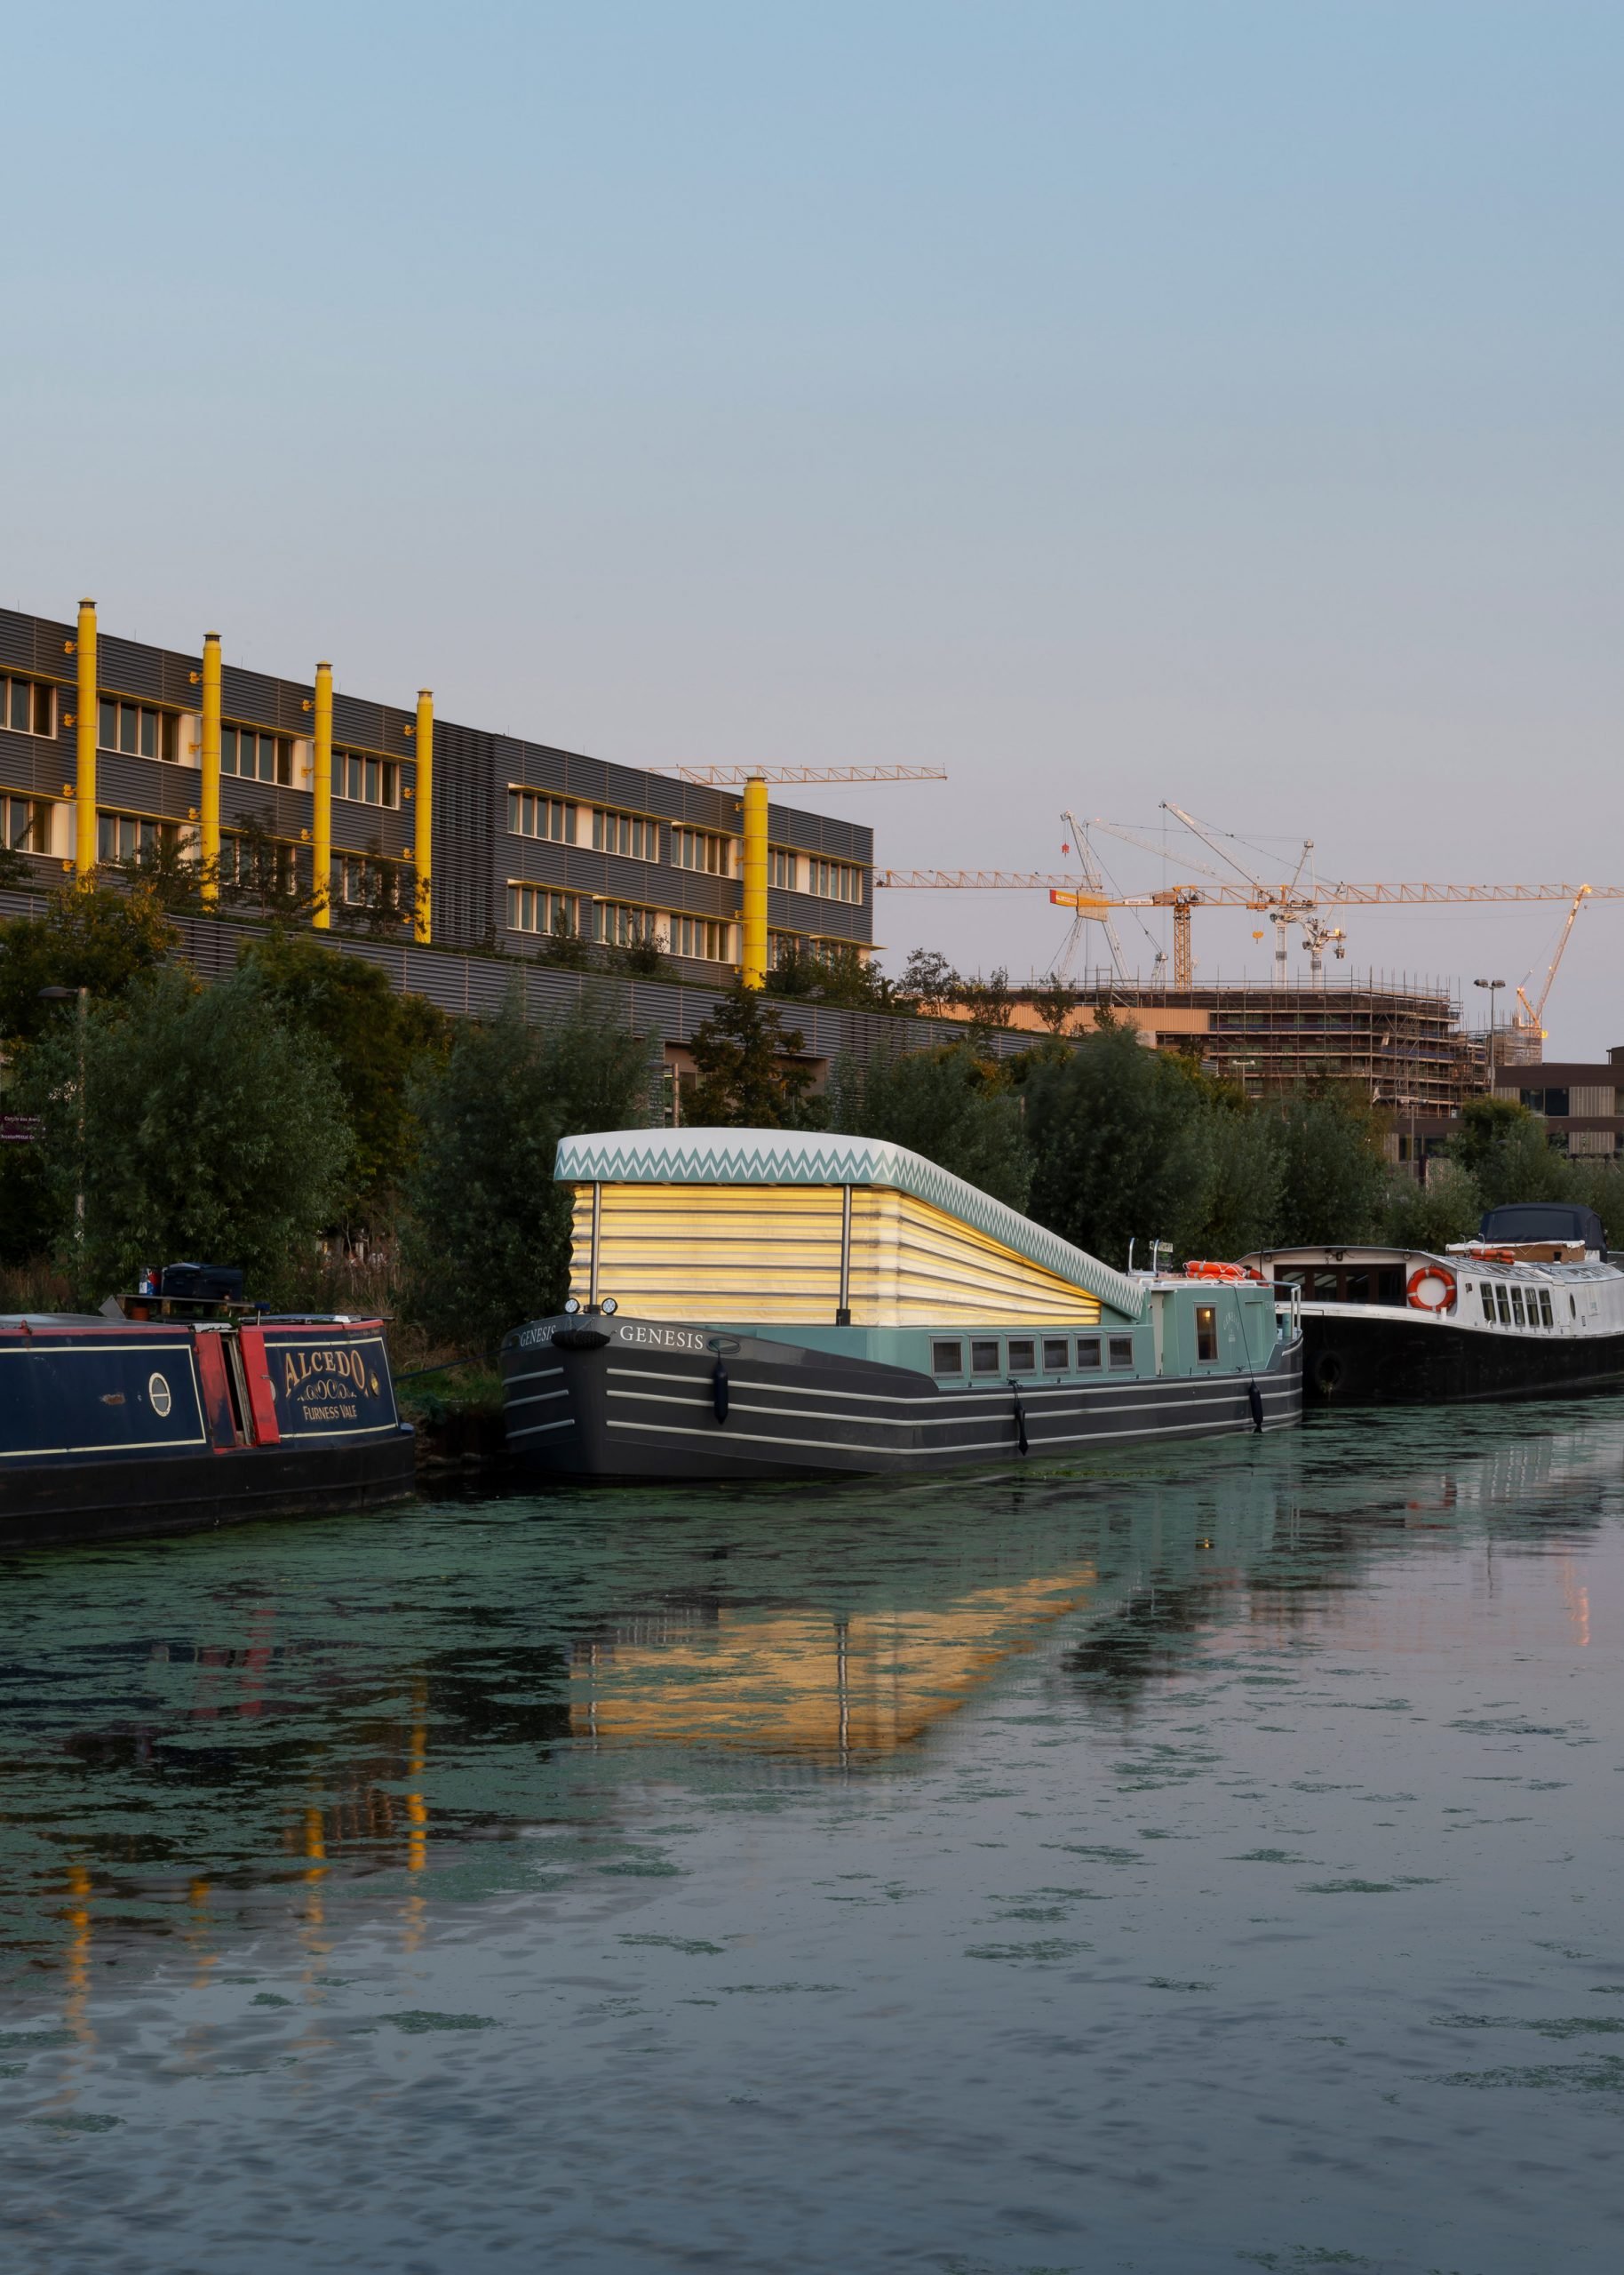 Лондонська архітектурна студія Denizen Works спроєктувала Genesis, альтернативну церкву на човні на каналі у східному Лондоні.  Плавуча каплиця увінчана дахом, що нагадує міхи органу. Фото: Gilbert McCarragher